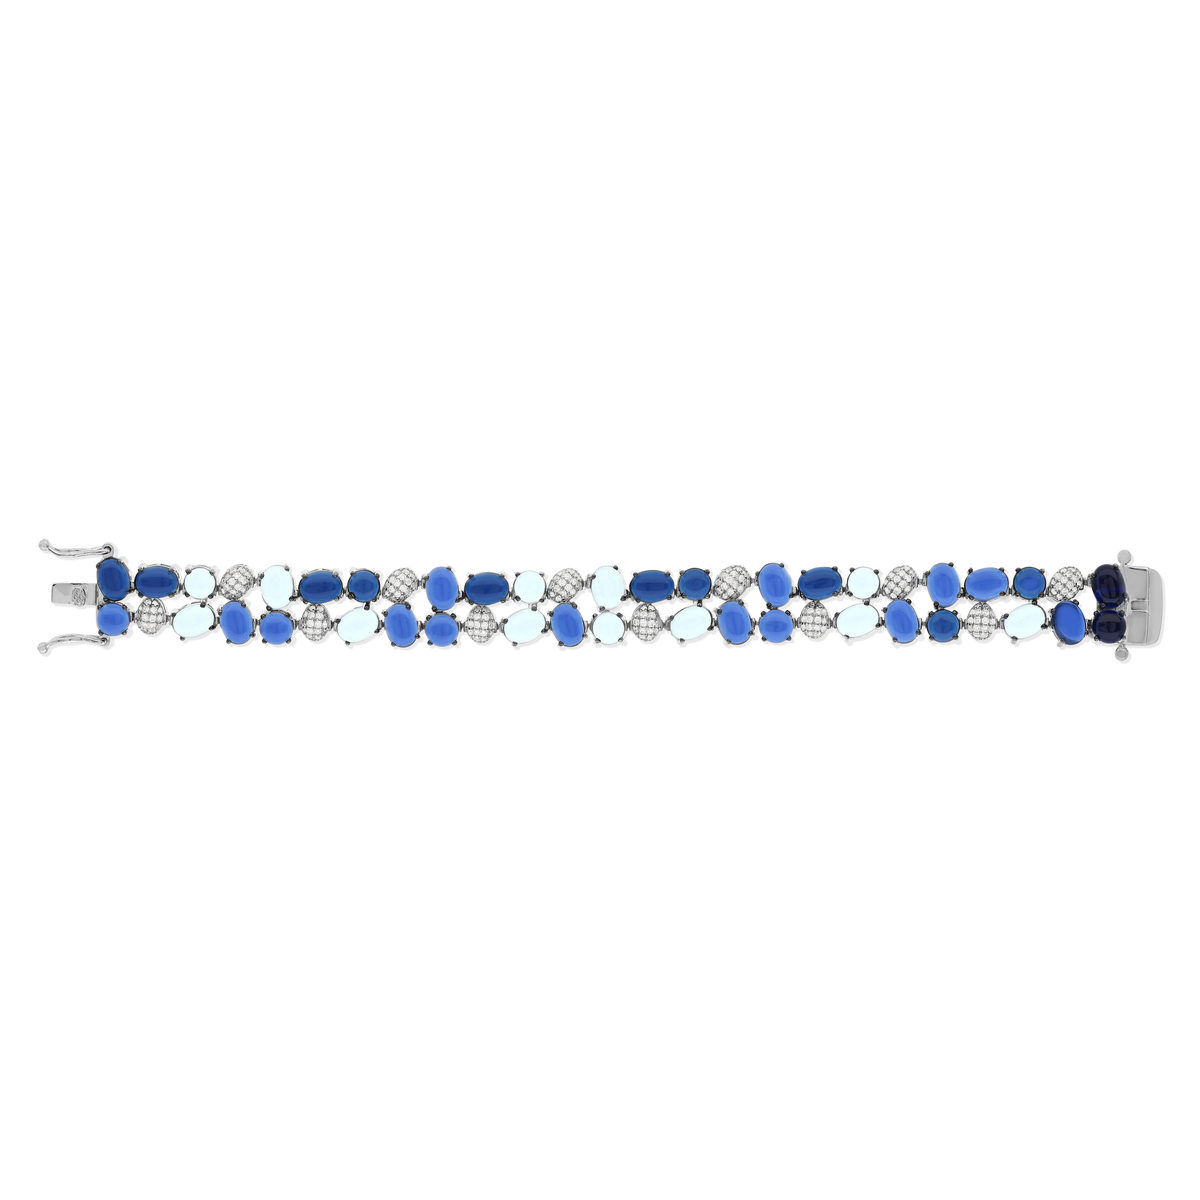 Bracelet argent 925 et ruthénium noir, pierres imitations bleues zirconias blanc 19 cm - vue 2